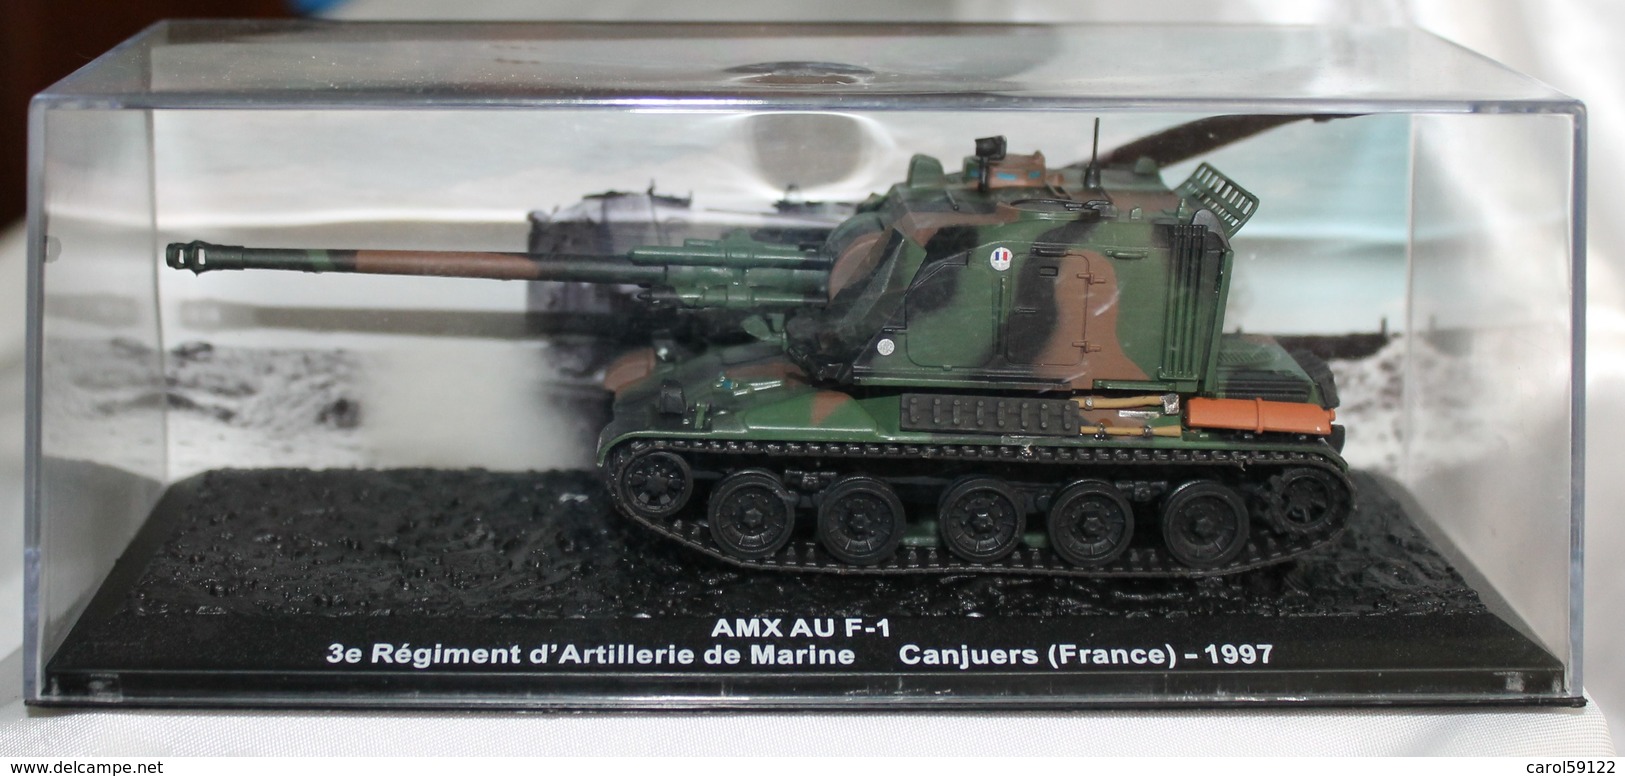 Maquette AMX AU F-1 1997 - Fahrzeuge